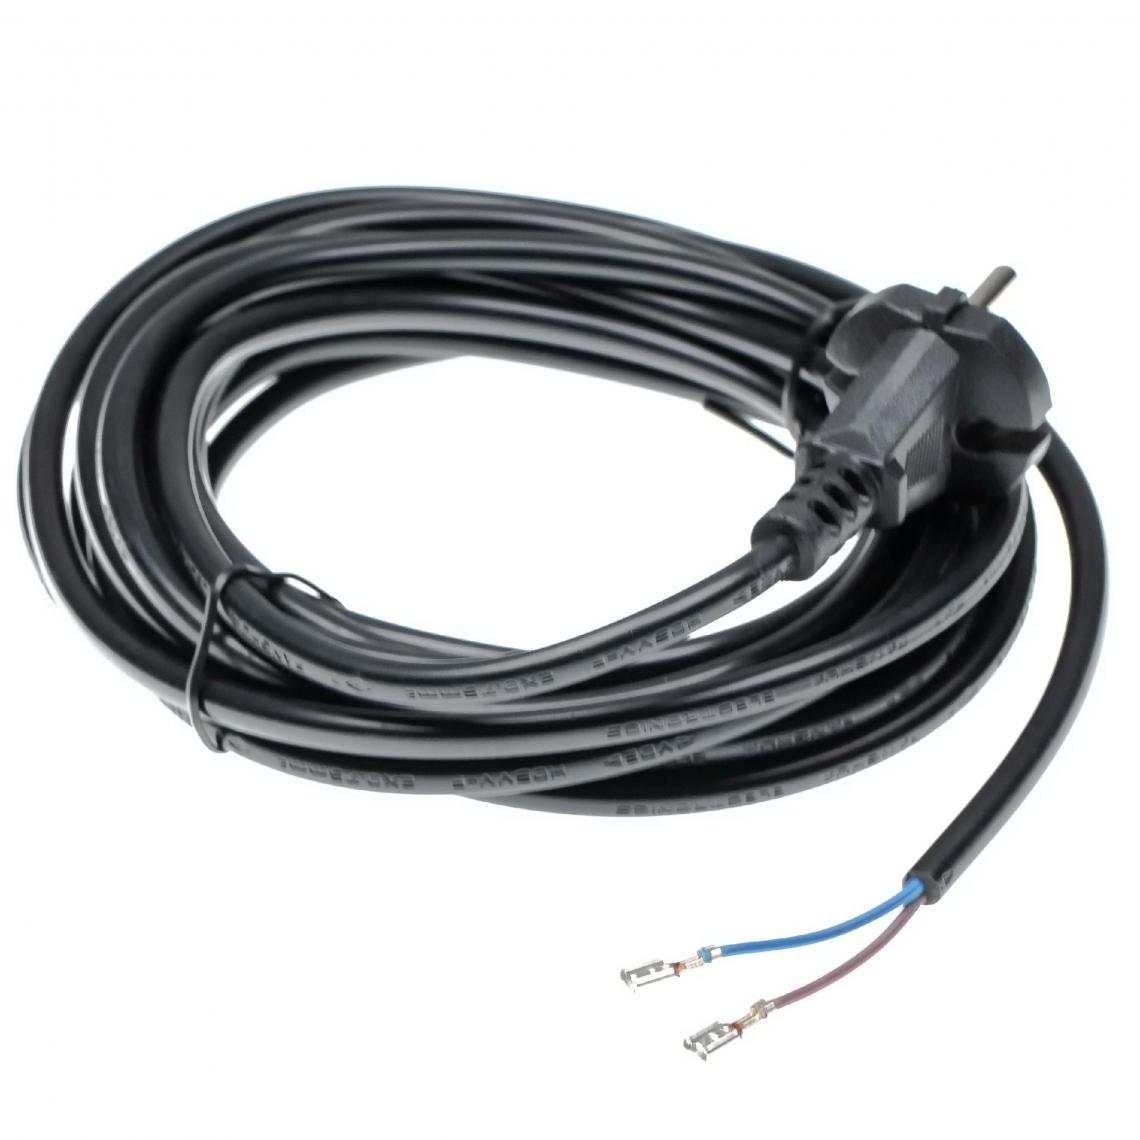 Vhbw - vhbw Câble électrique compatible avec Nilfisk Aero, Alto, GD, GD710, GD930, GM, GS aspirateurs - 6 m, 4000 W - Accessoire entretien des sols